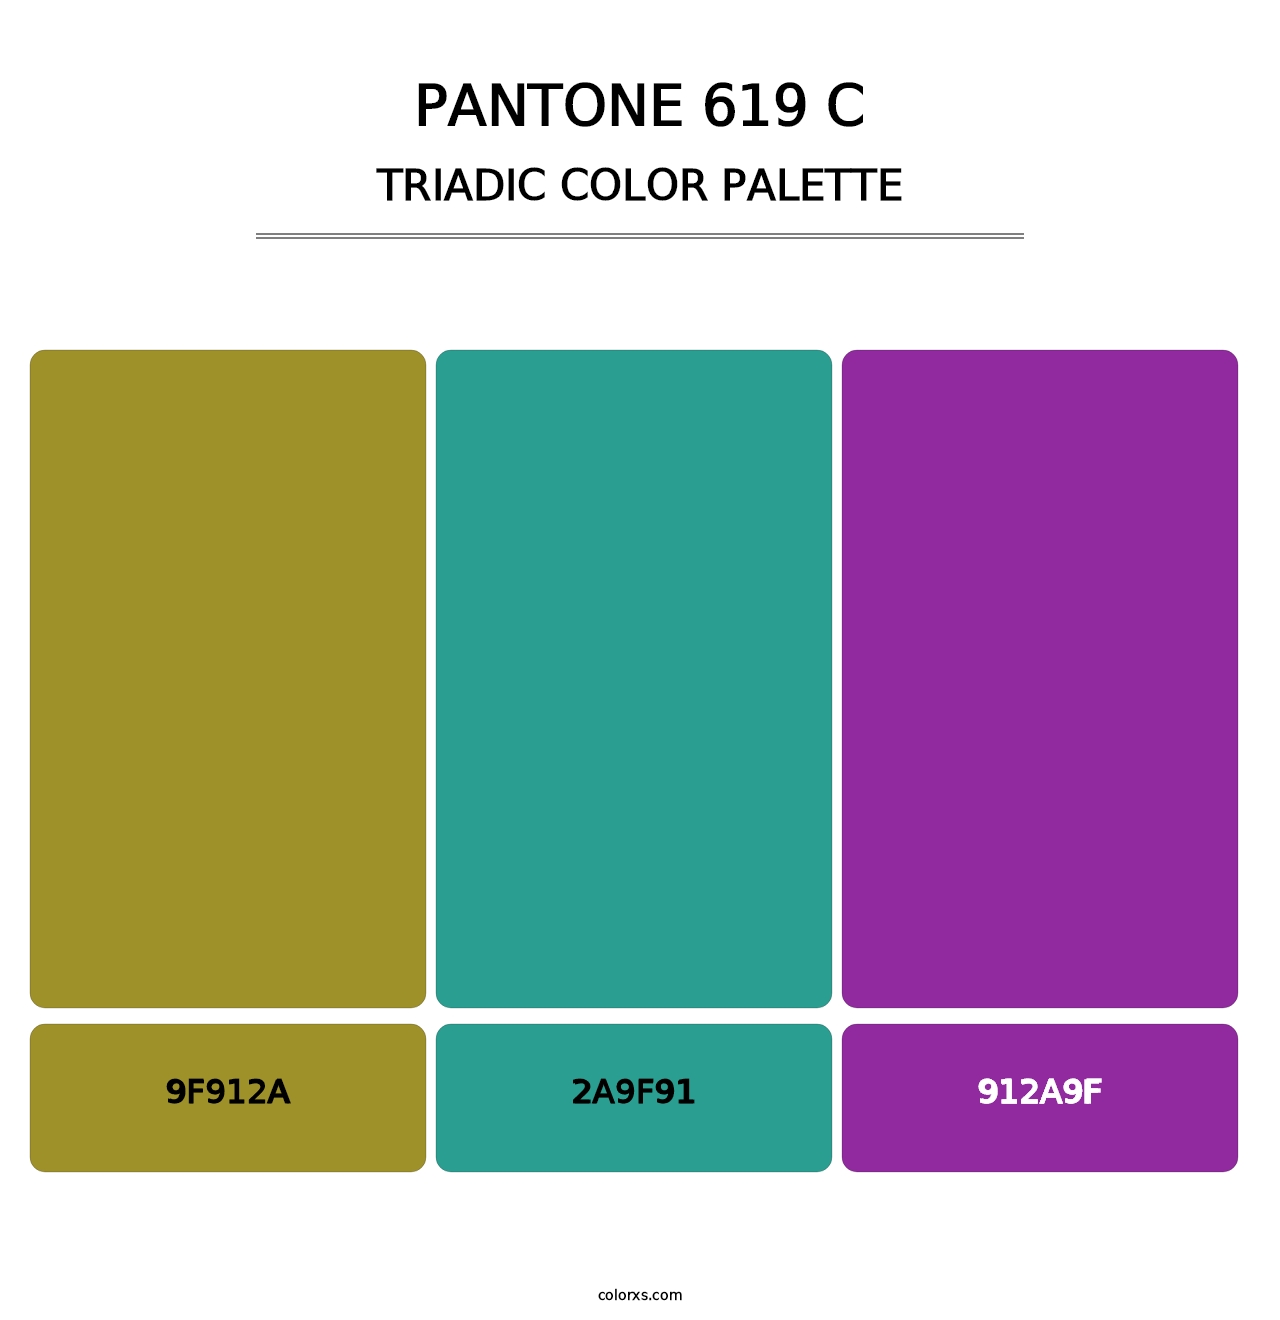 PANTONE 619 C - Triadic Color Palette